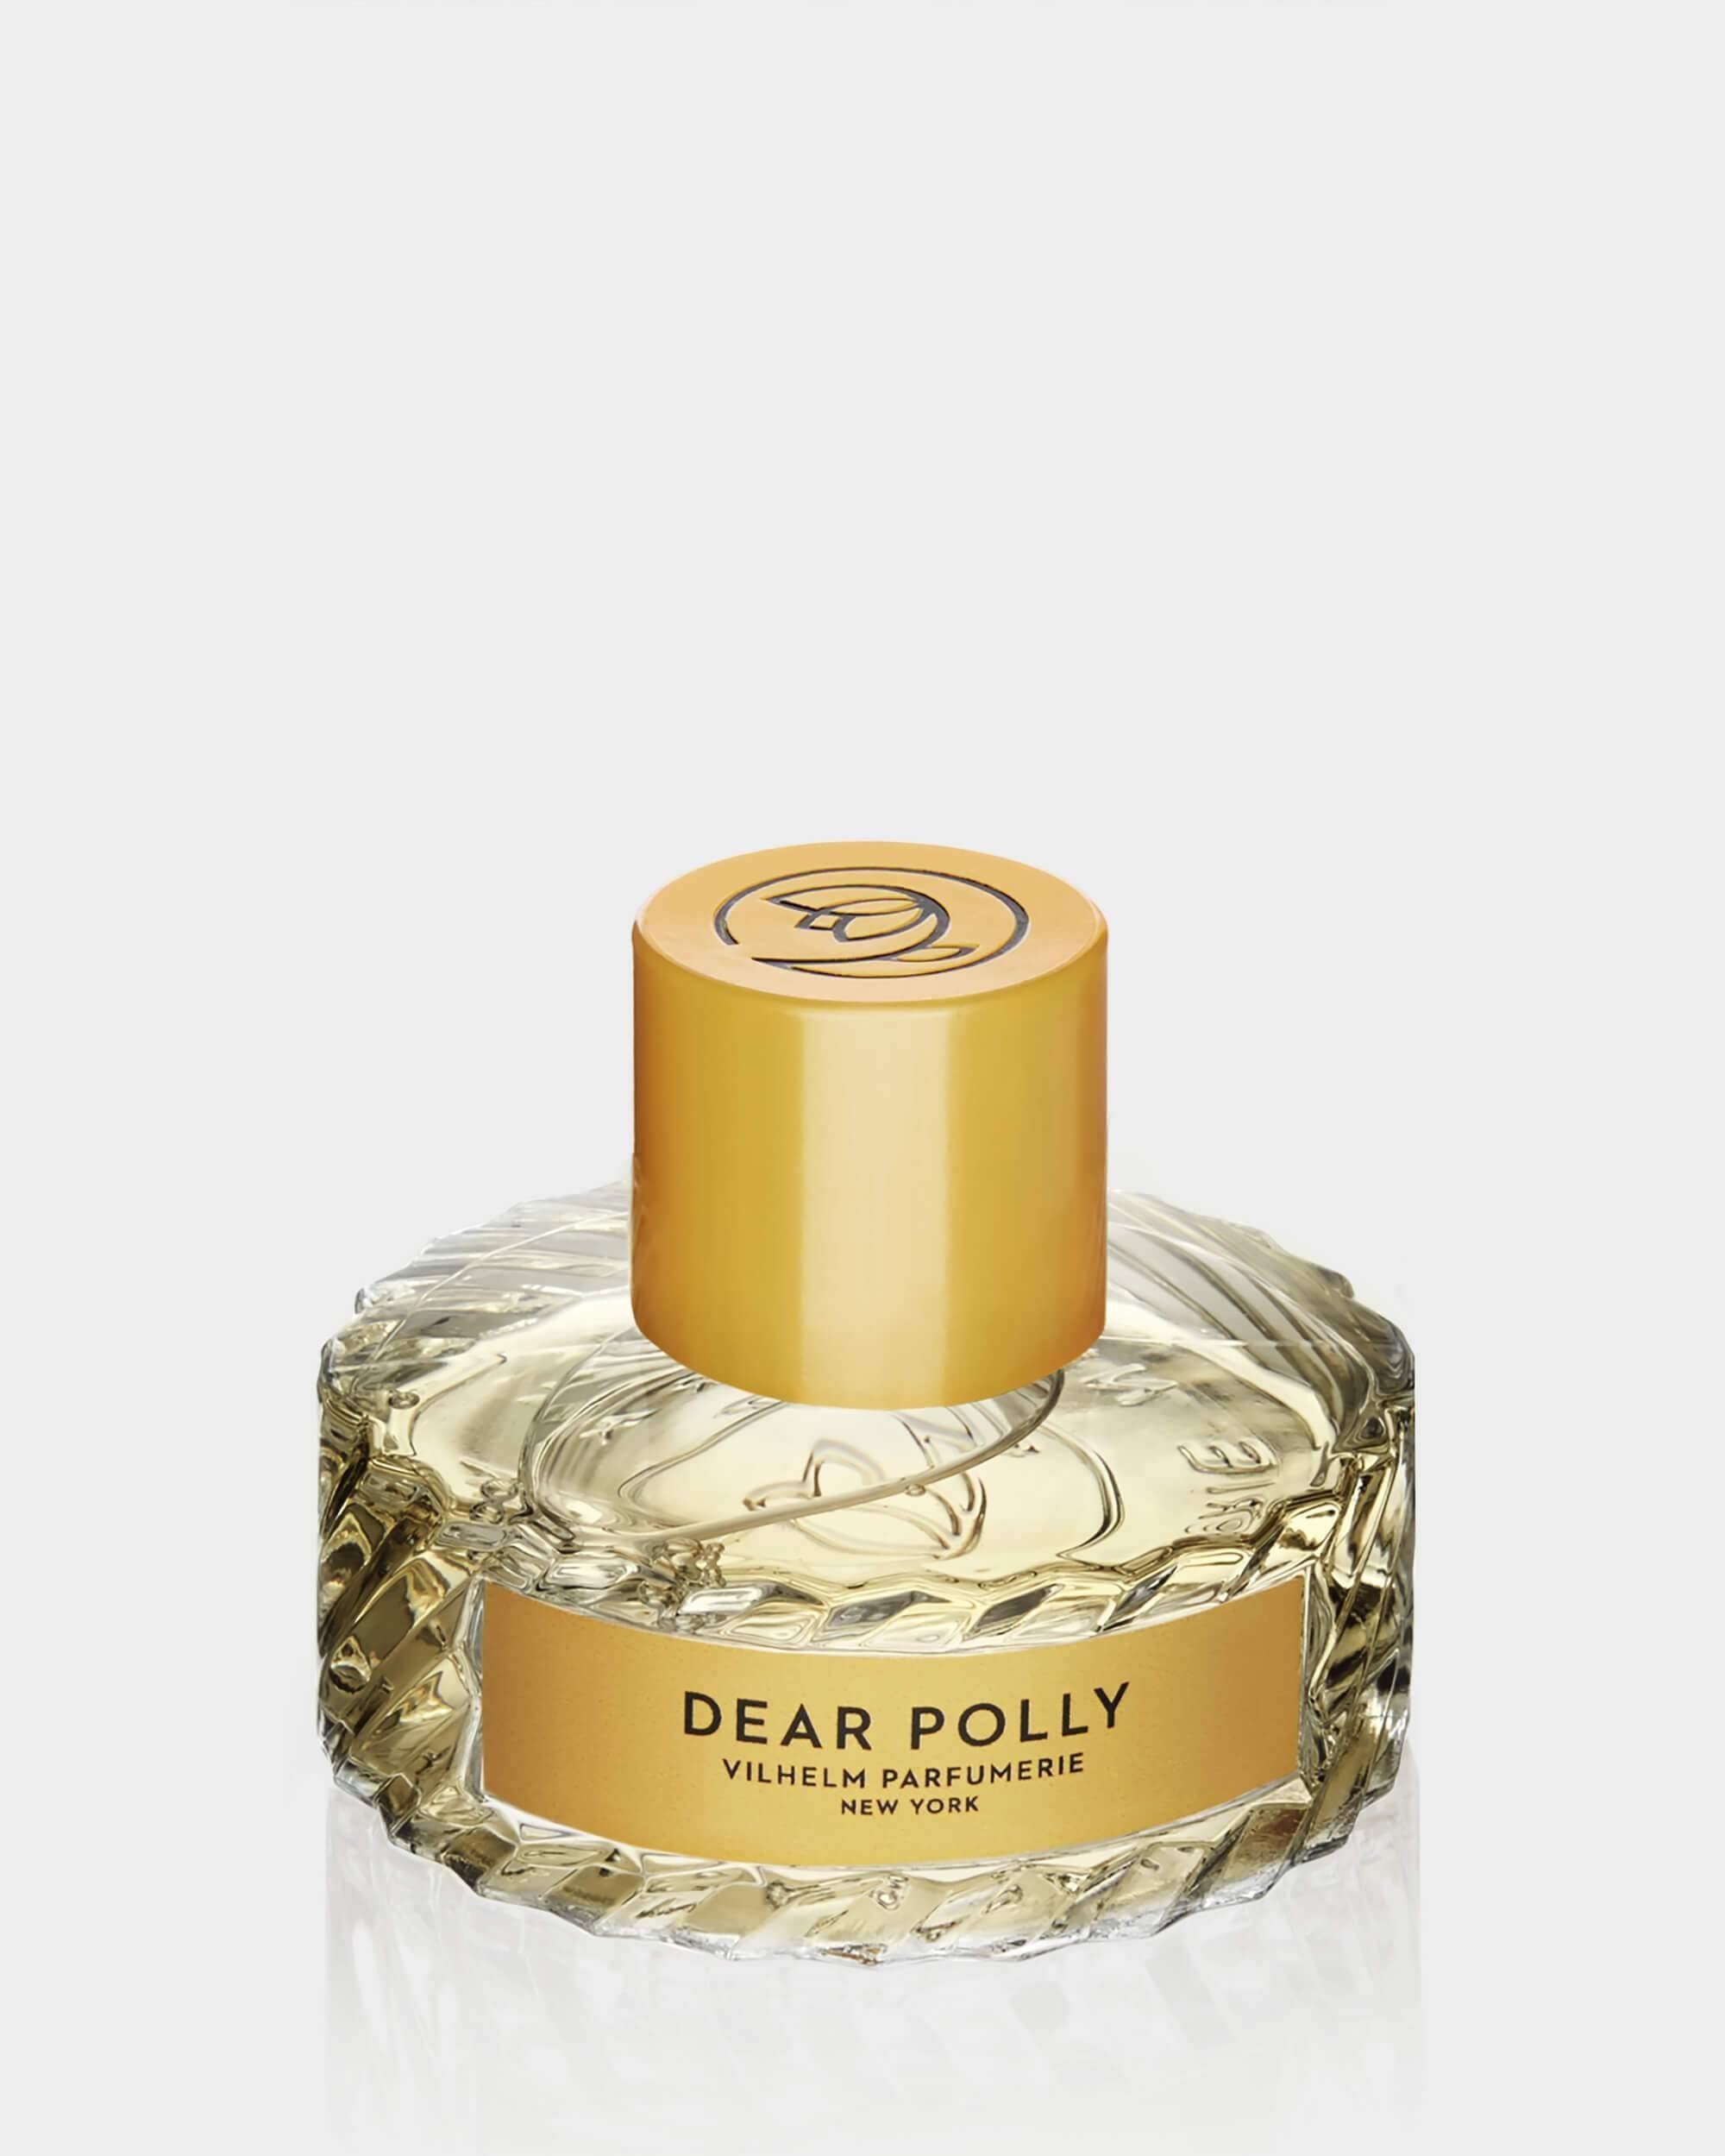 DEAR POLLY - Vilhelm Parfumerie